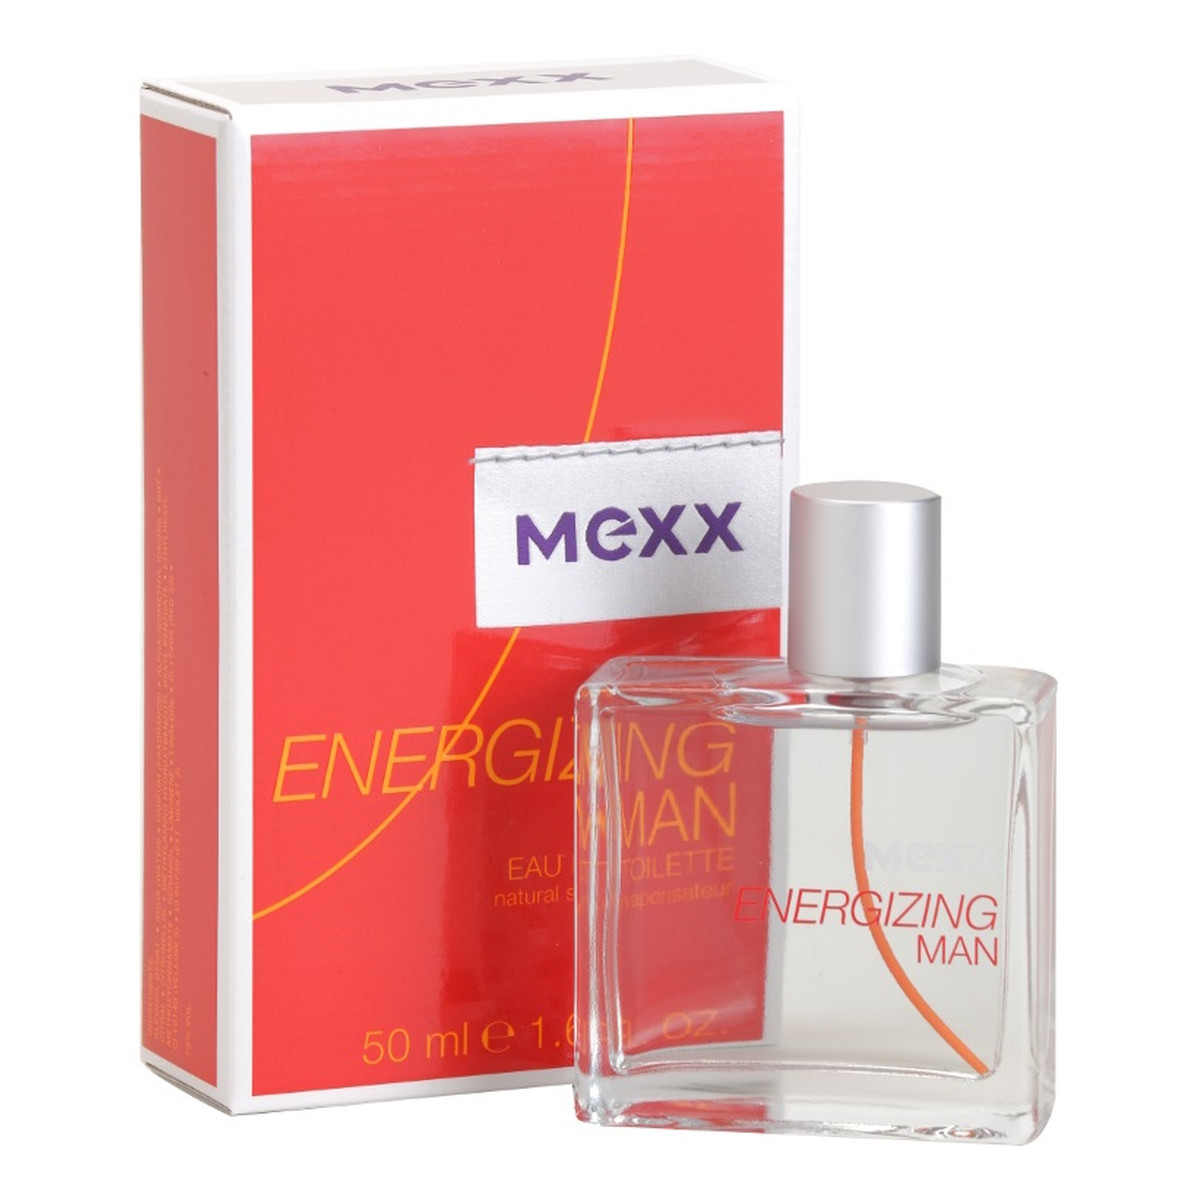 Mexx Energizing Man woda toaletowa dla mężczyzn 50ml